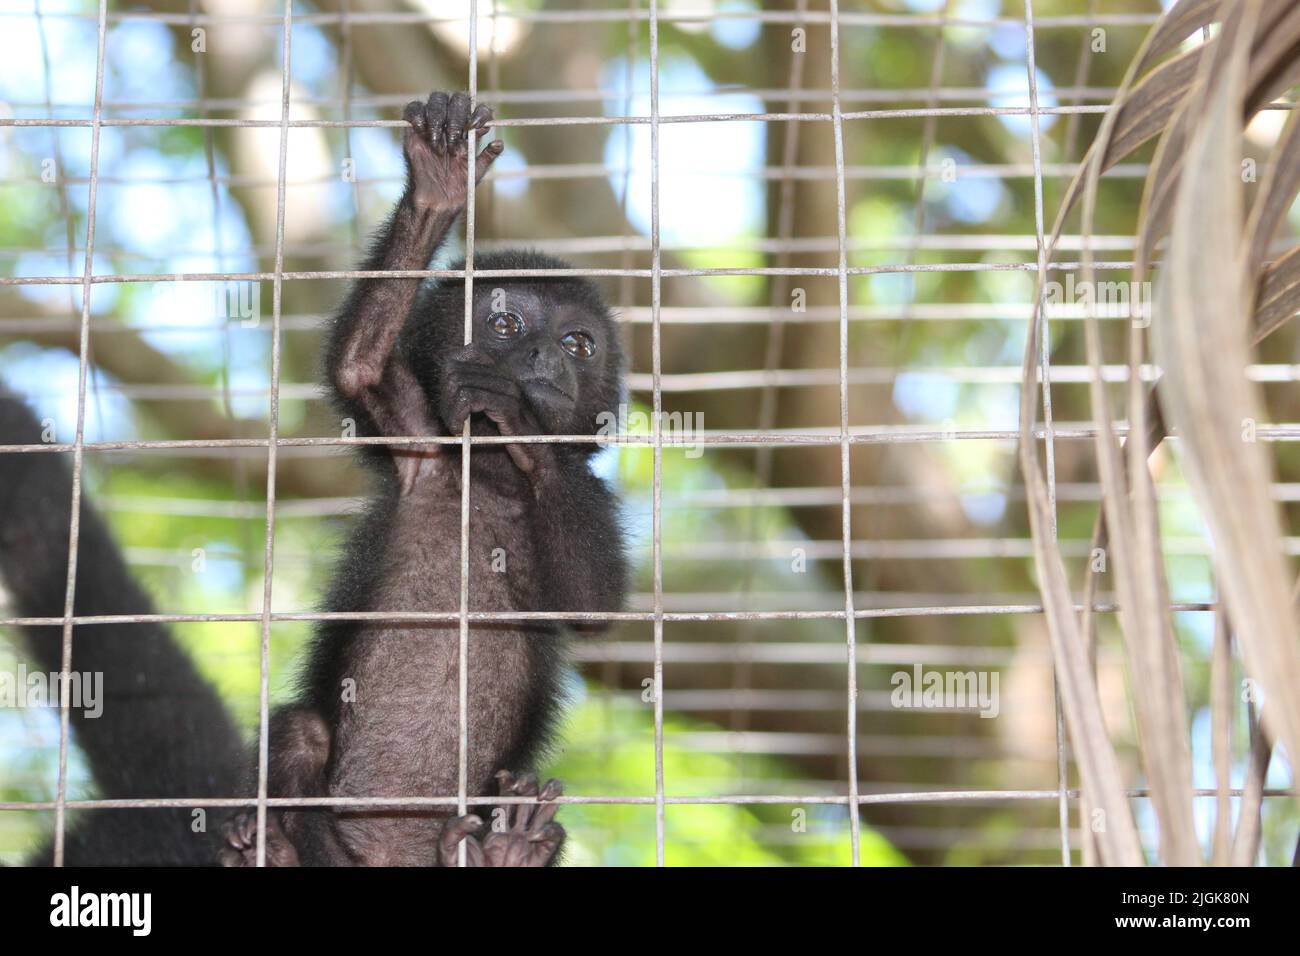 La scimmia ragno del giovane Geoffroy (Ateles geoffroyi) in una gabbia con rete metallica che sale sulle sbarre Foto Stock